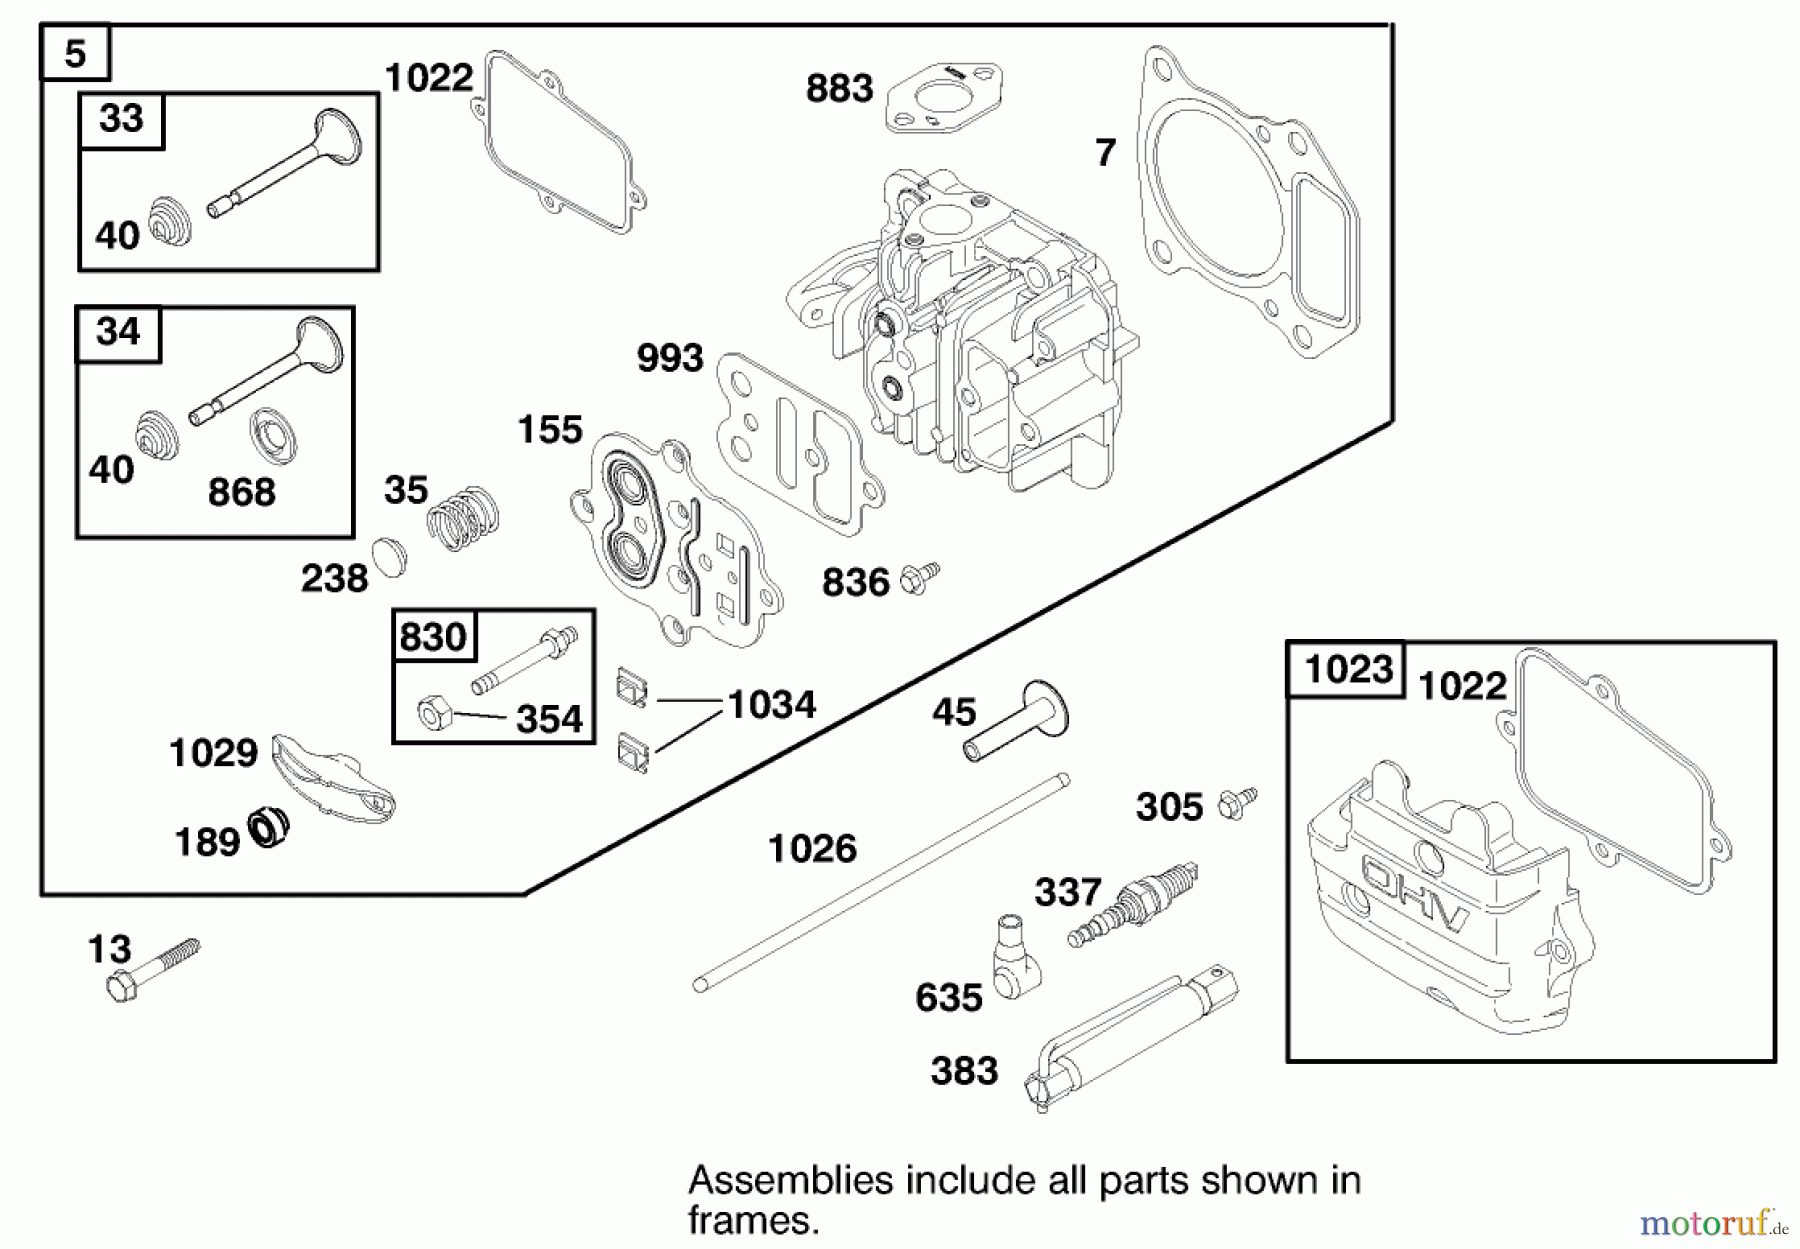  Toro Neu Mowers, Walk-Behind Seite 2 22161 - Toro Recycler Mower, 2000 (200000001-200999999) ENGINE GTS-200 #2